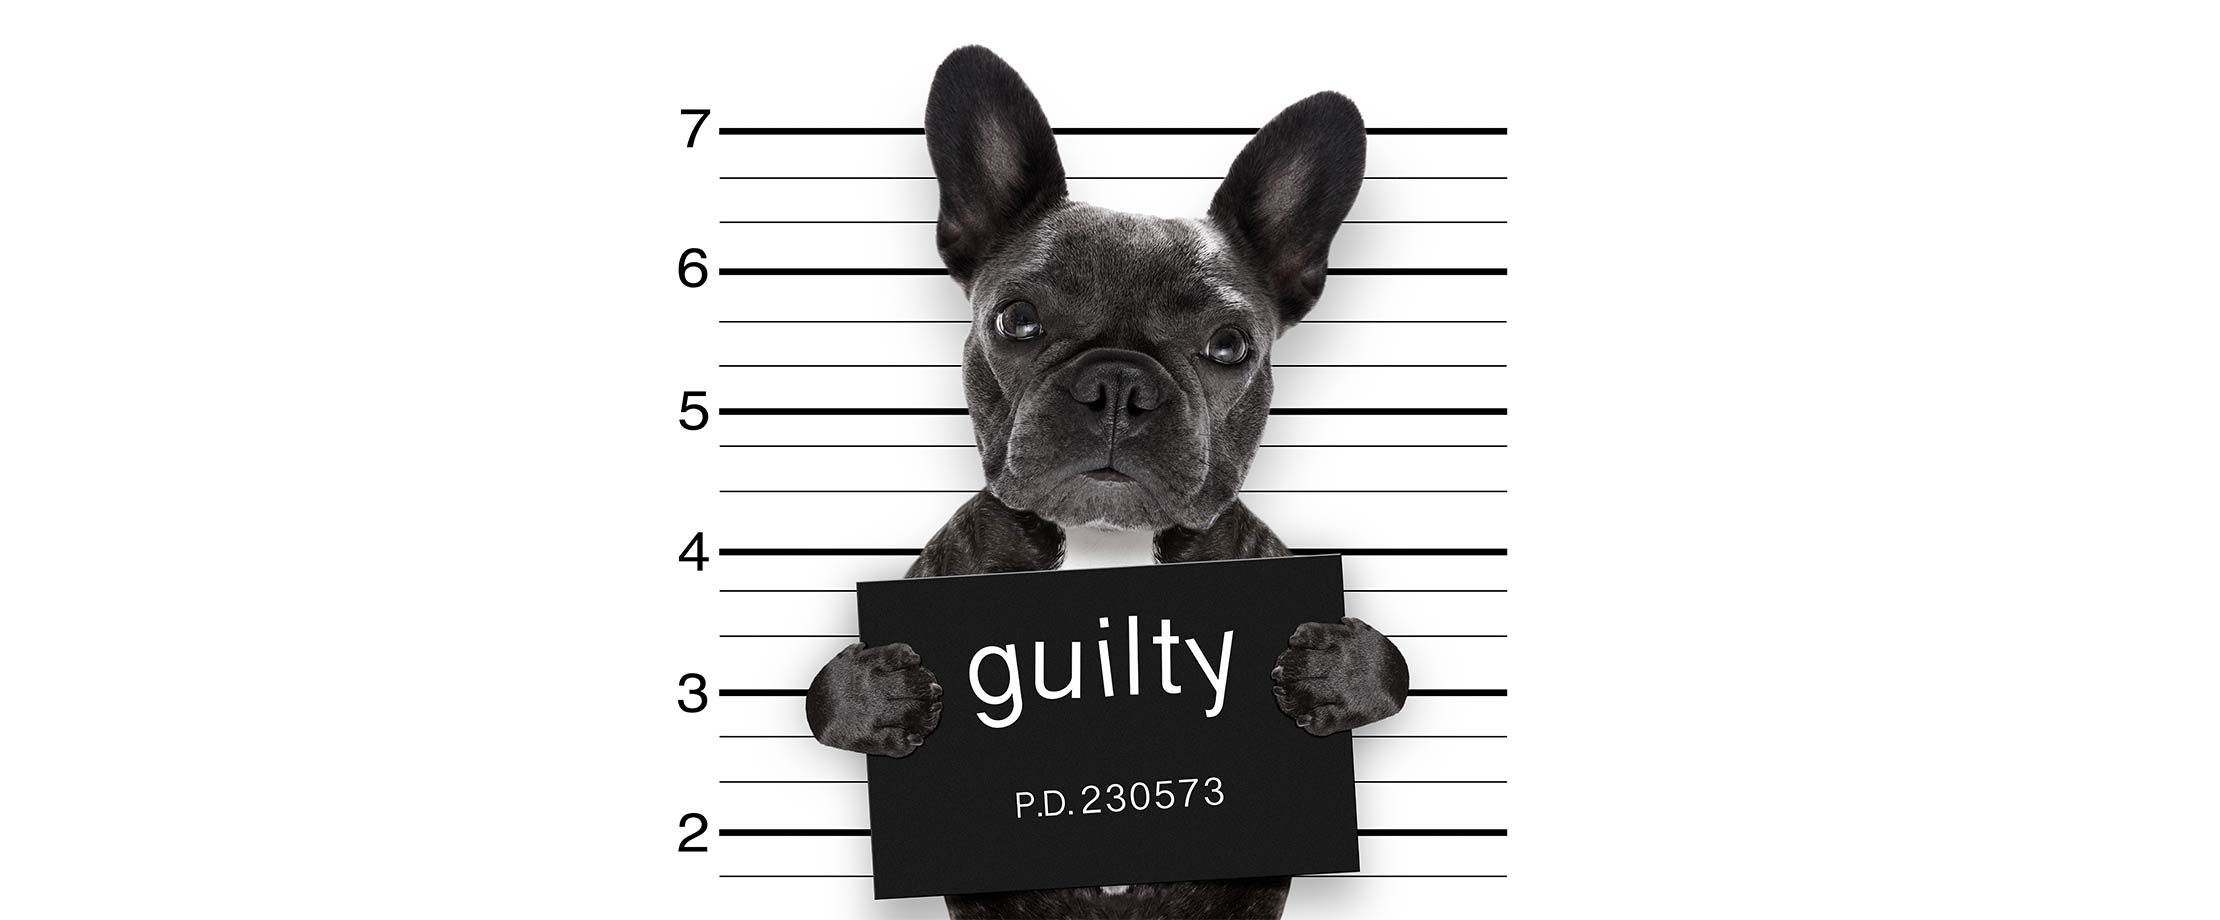 Eine schwarze Bulldogge hält ein Schild in der Hand auf dem “guilty” steht. Von ihm wird ein Foto vor einer Wand gemacht, die bei der Inhaftierung von Straftätern üblich ist. 